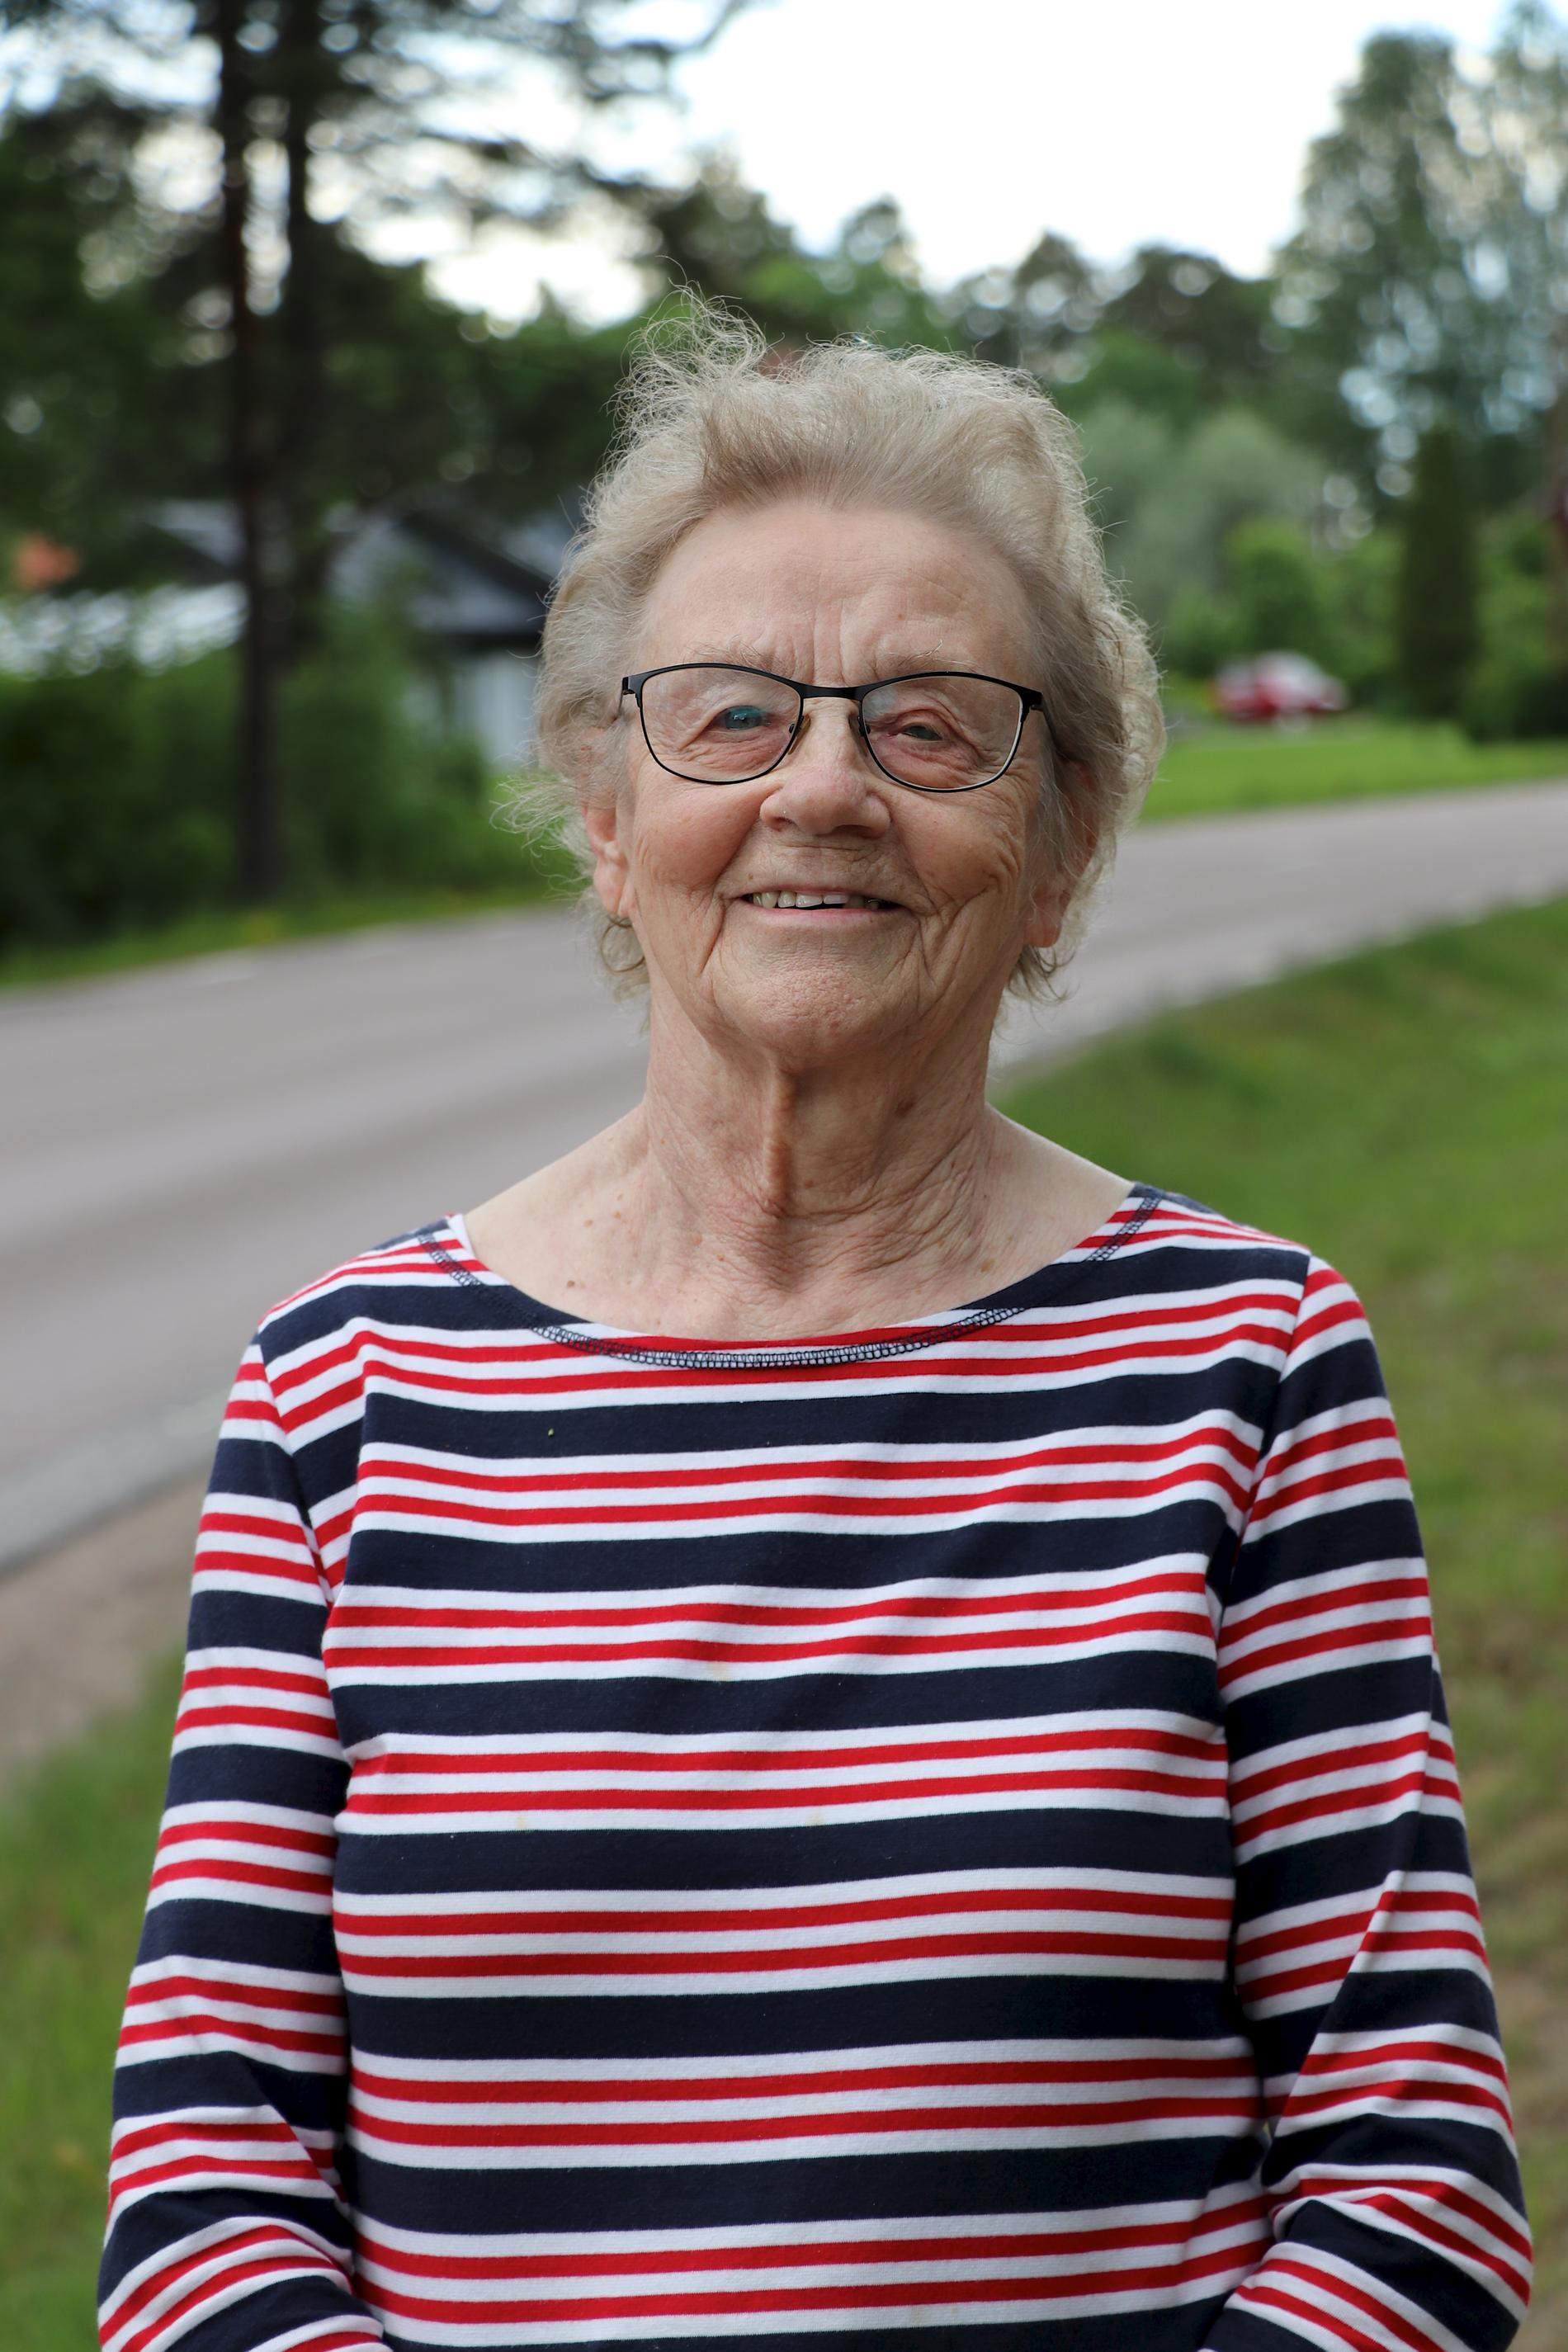 Stina Ruhdin åkte mil runt till samhälle efter samhälle för att värva medlemmar till Bergsängs byalag – allt för att rädda orten från avfolkning. – Här ställer grannarna upp. Det finns ingen generationsklyfta på något vis, utan vi kör rakt över alla generationer, säger hon.